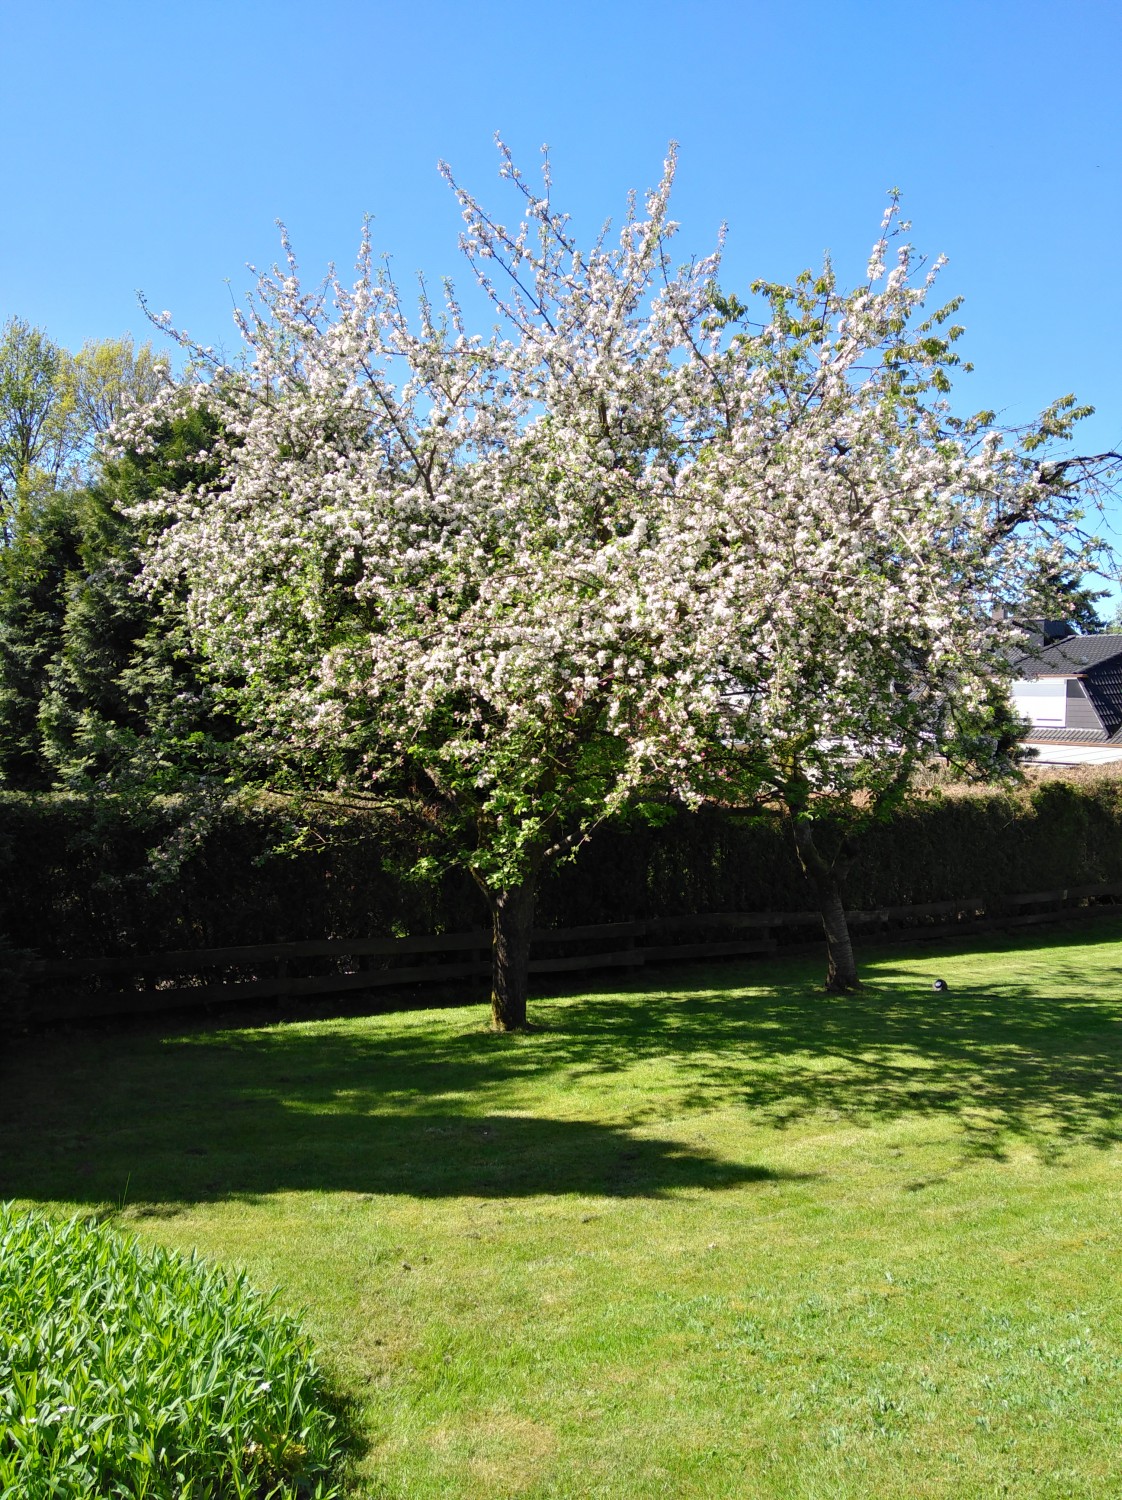 überbordende Blüte eines Apfelbaumes steht für die Kraft des Frühlings, Feng Shui Bischoff in Stormarn